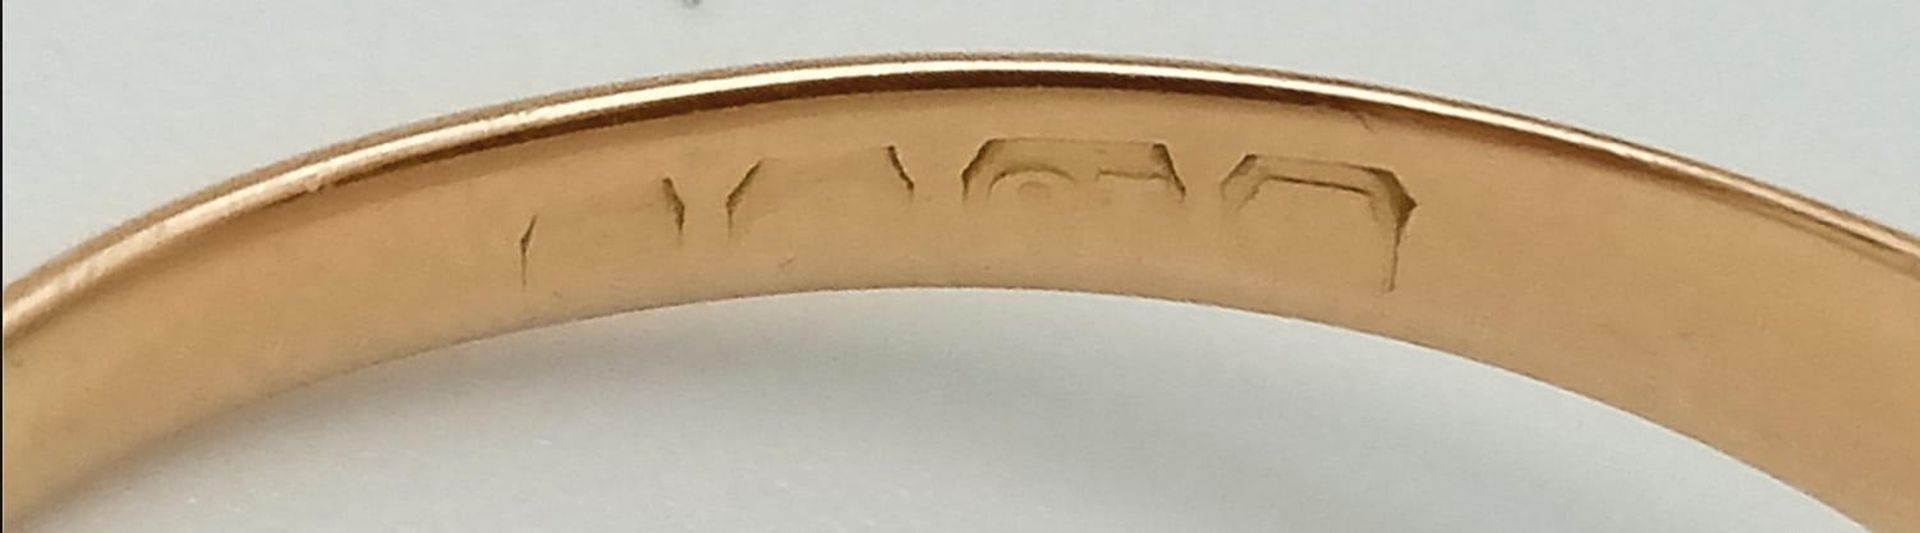 A Vintage 18K Yellow Gold Signet Ring. Size T/U. 4.32g weight. - Bild 7 aus 11